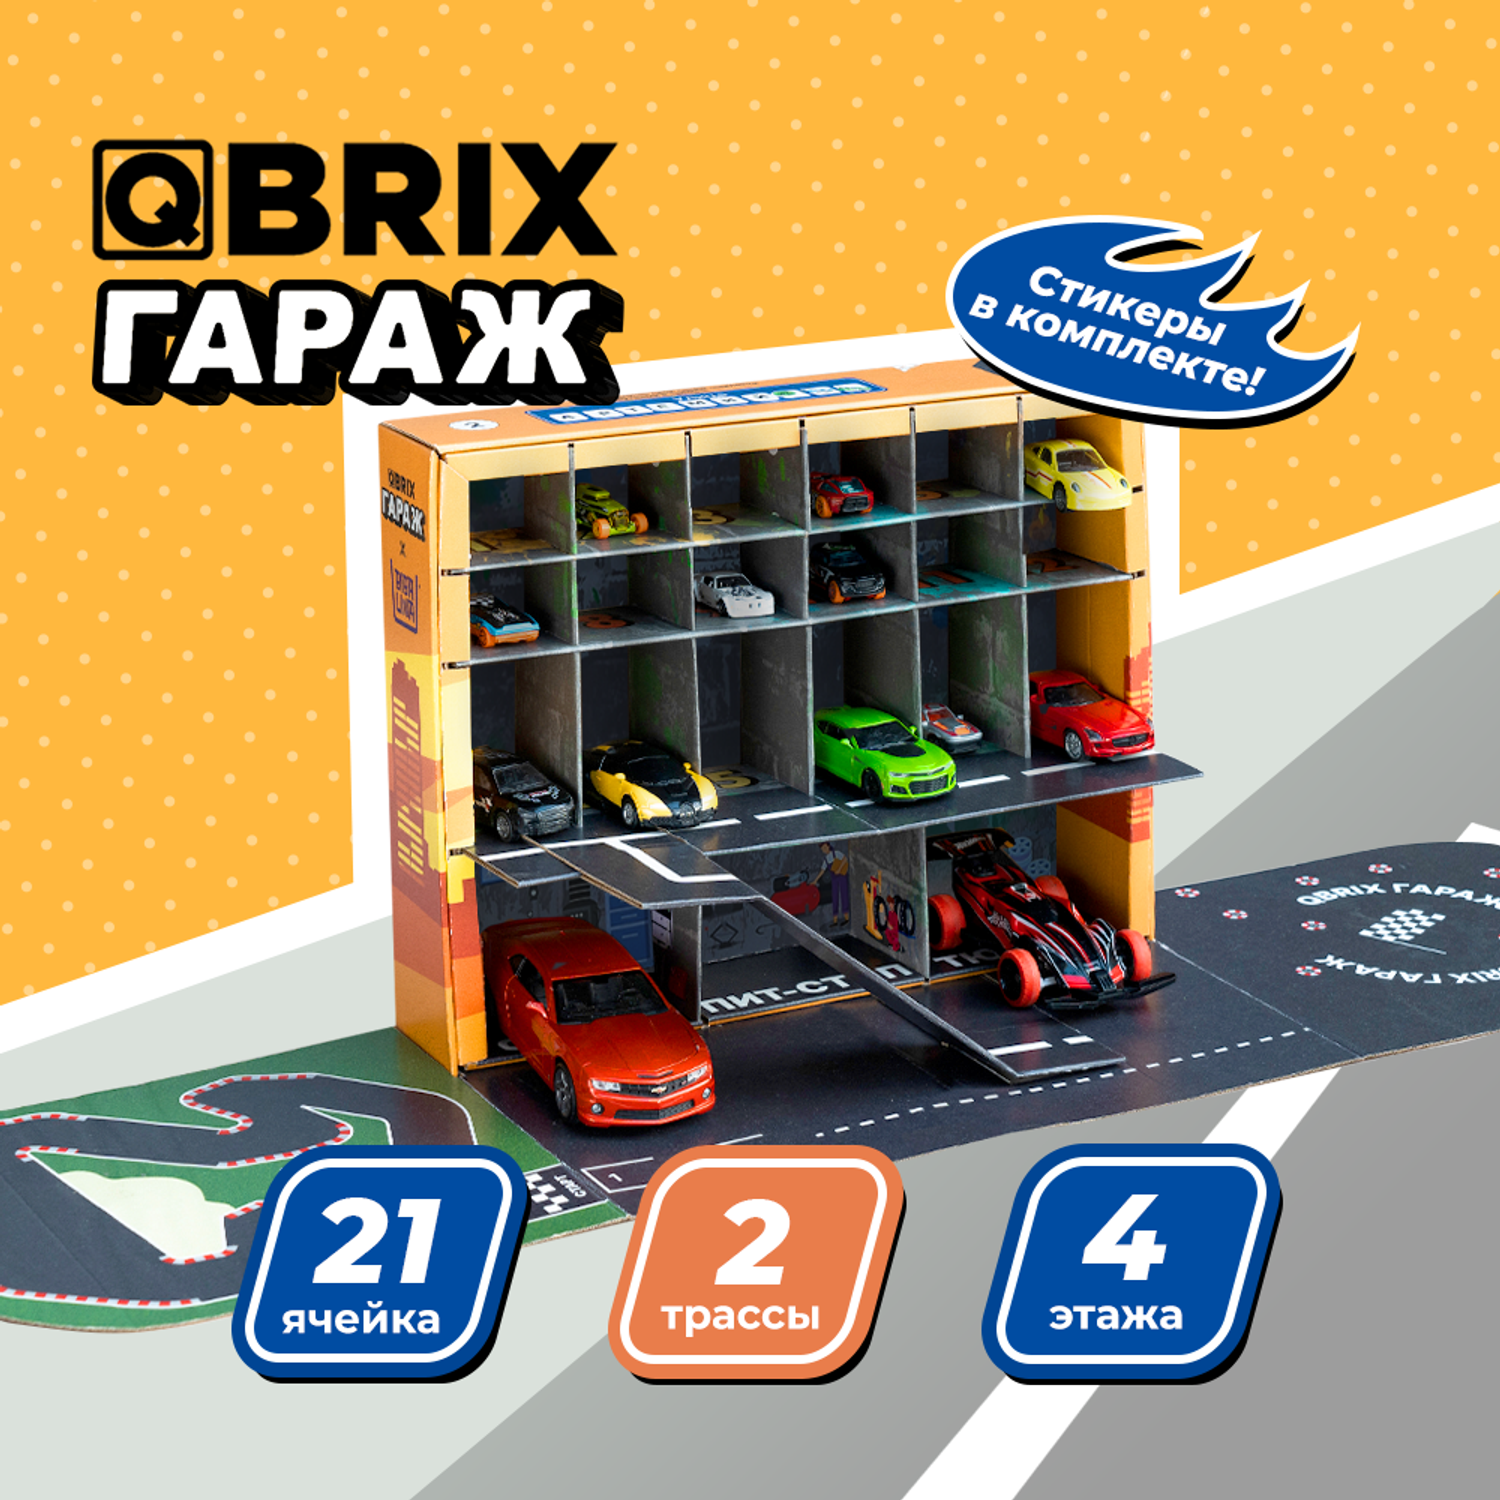 Гараж-парковка QBRIX детский автопаркинг для машинок на 21 место Г102 - фото 2